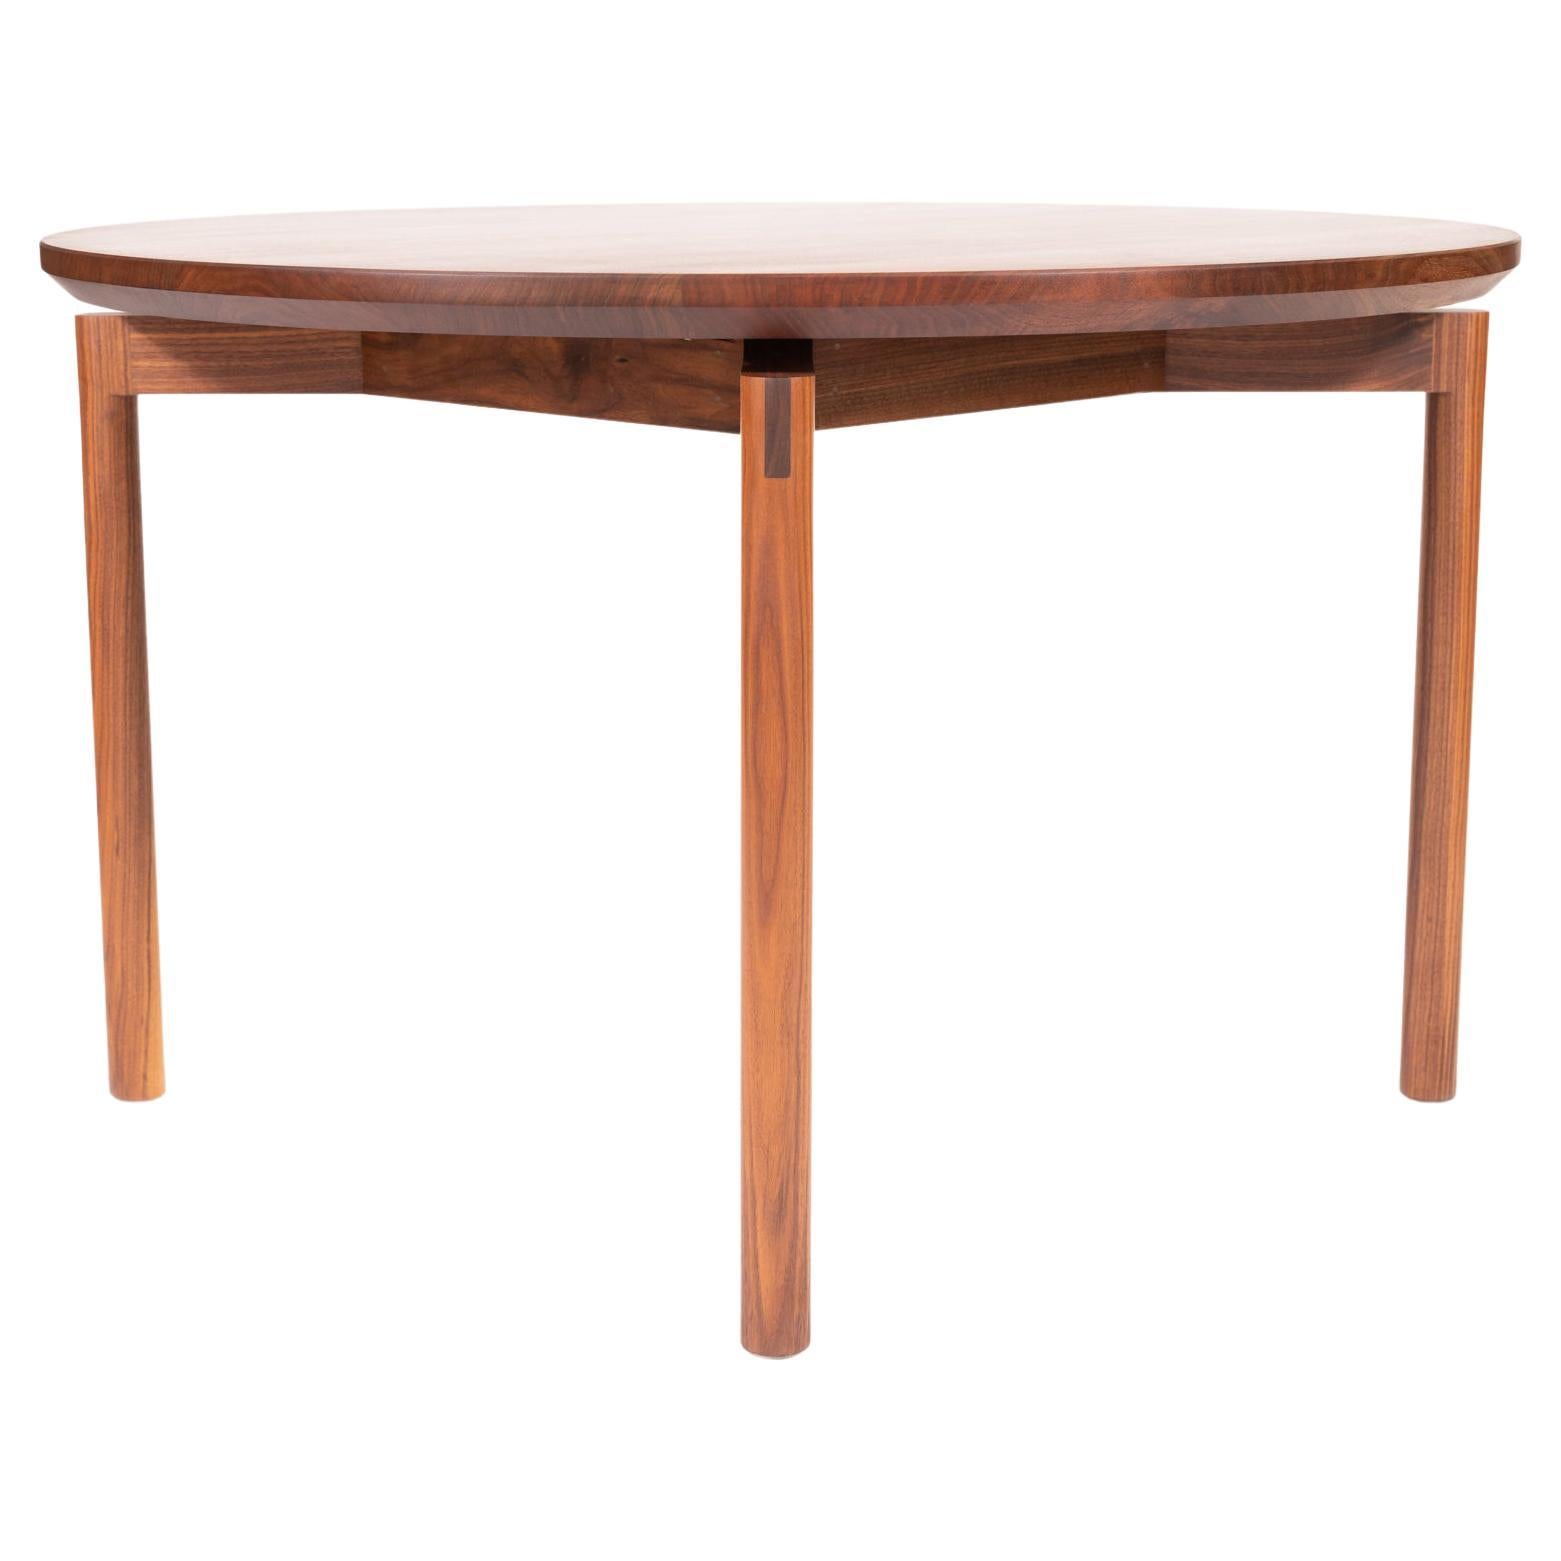 Enso Tisch, Esstisch aus Nussbaum mit Messerkante und sichtbaren Tischlerarbeiten